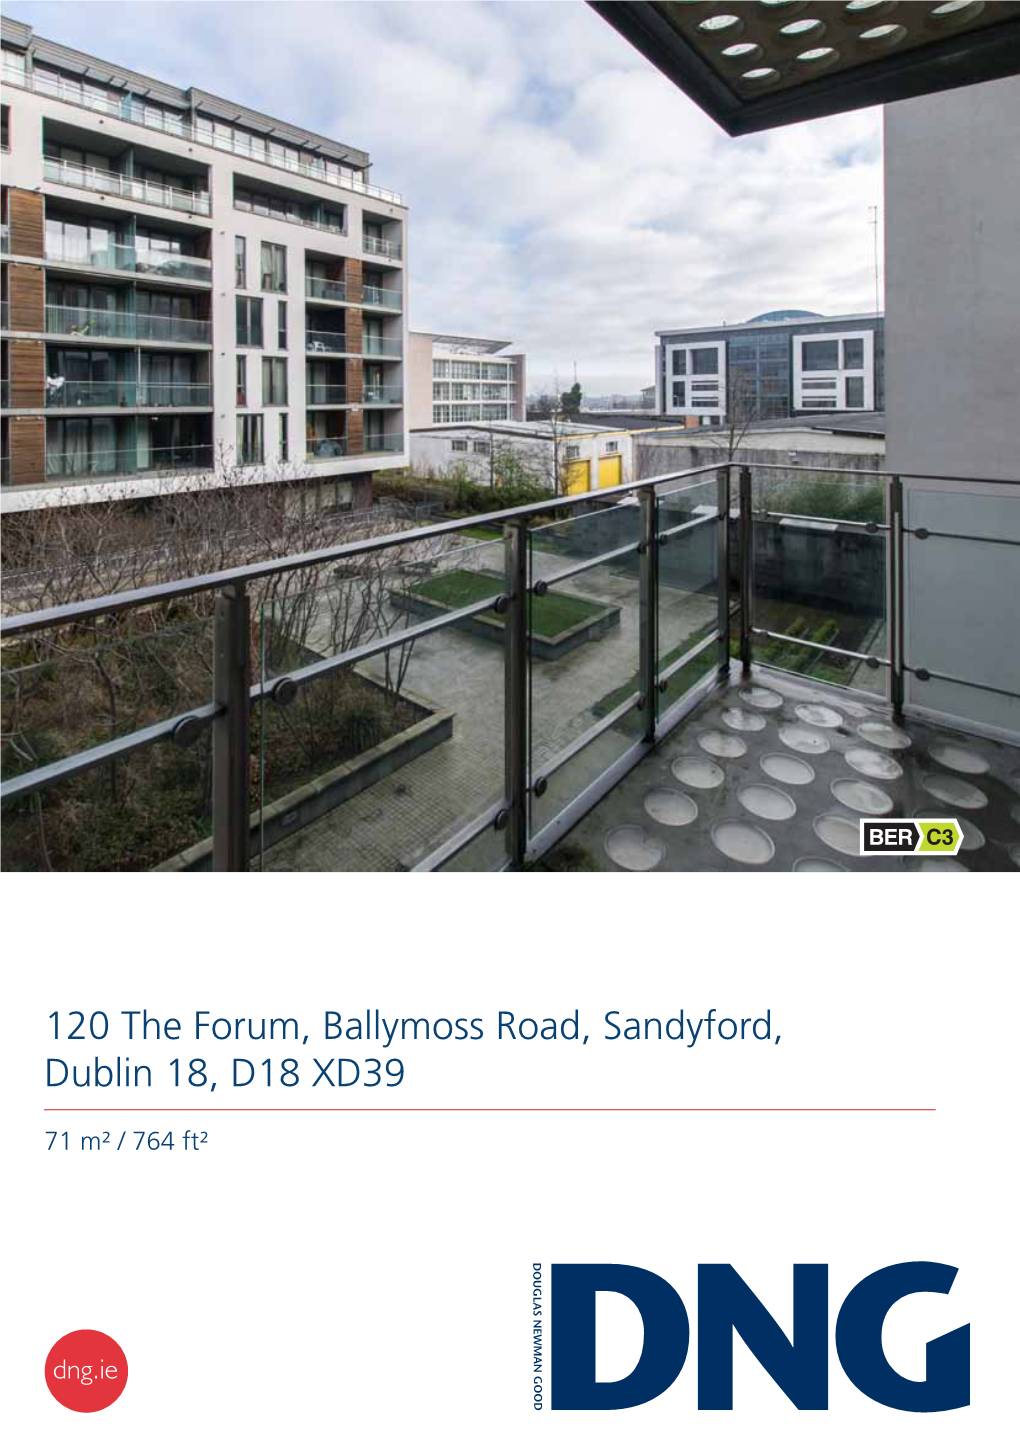 120 the Forum, Ballymoss Road, Sandyford, Dublin 18, D18 XD39